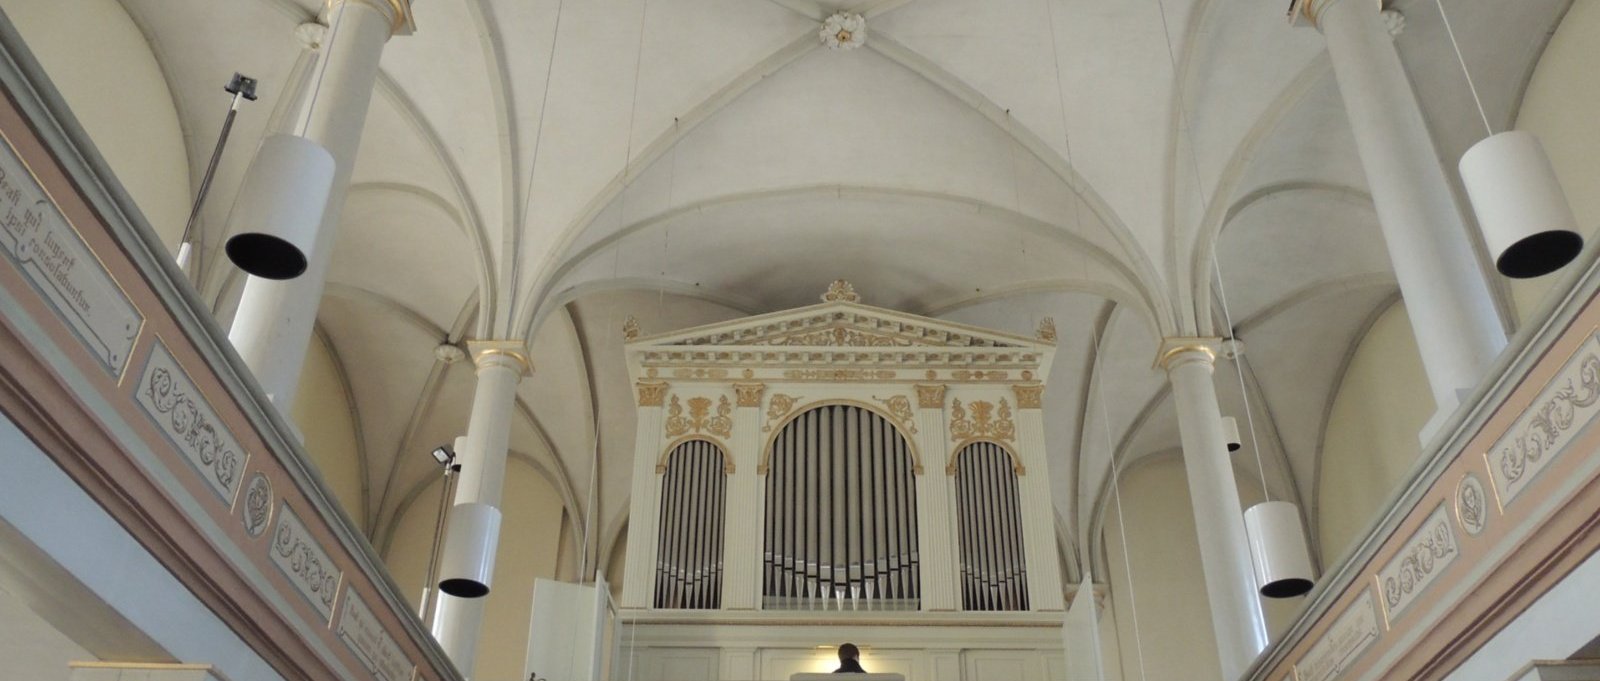 Orgel-St.-Johannes (c) Gregor Mooser